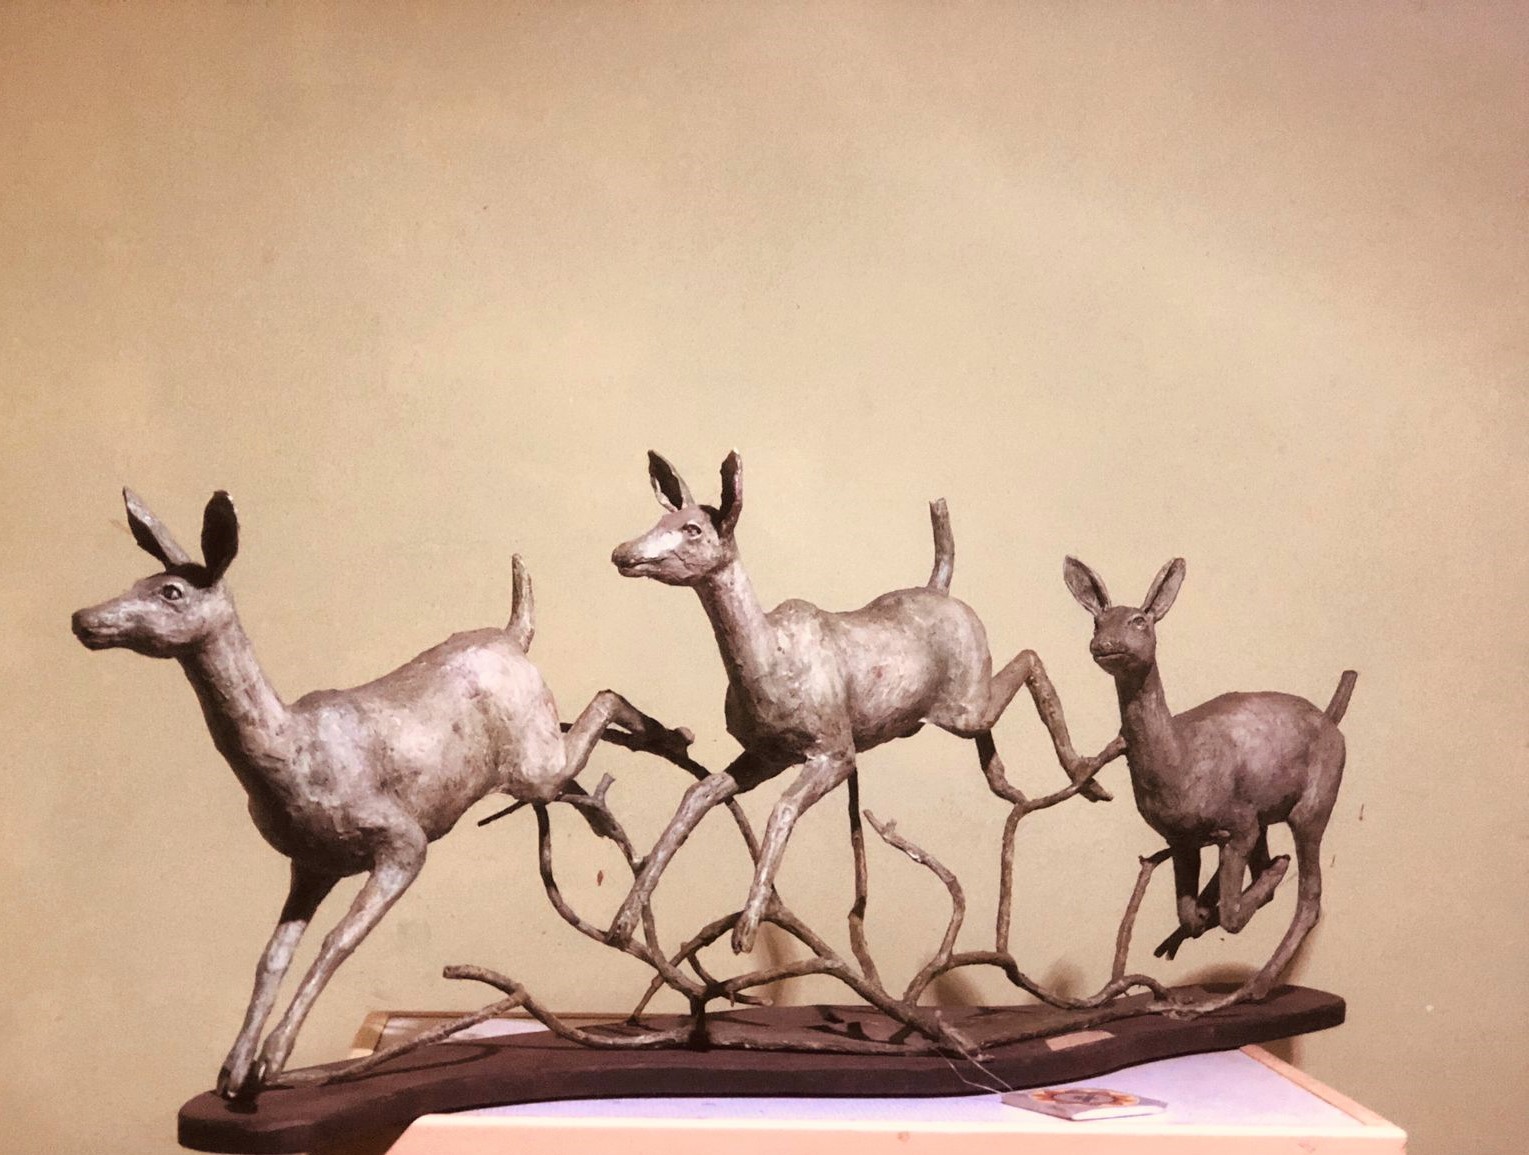 දුවන මුවන් රංචුව (Herd of running deer) by Newton Rajasinghe